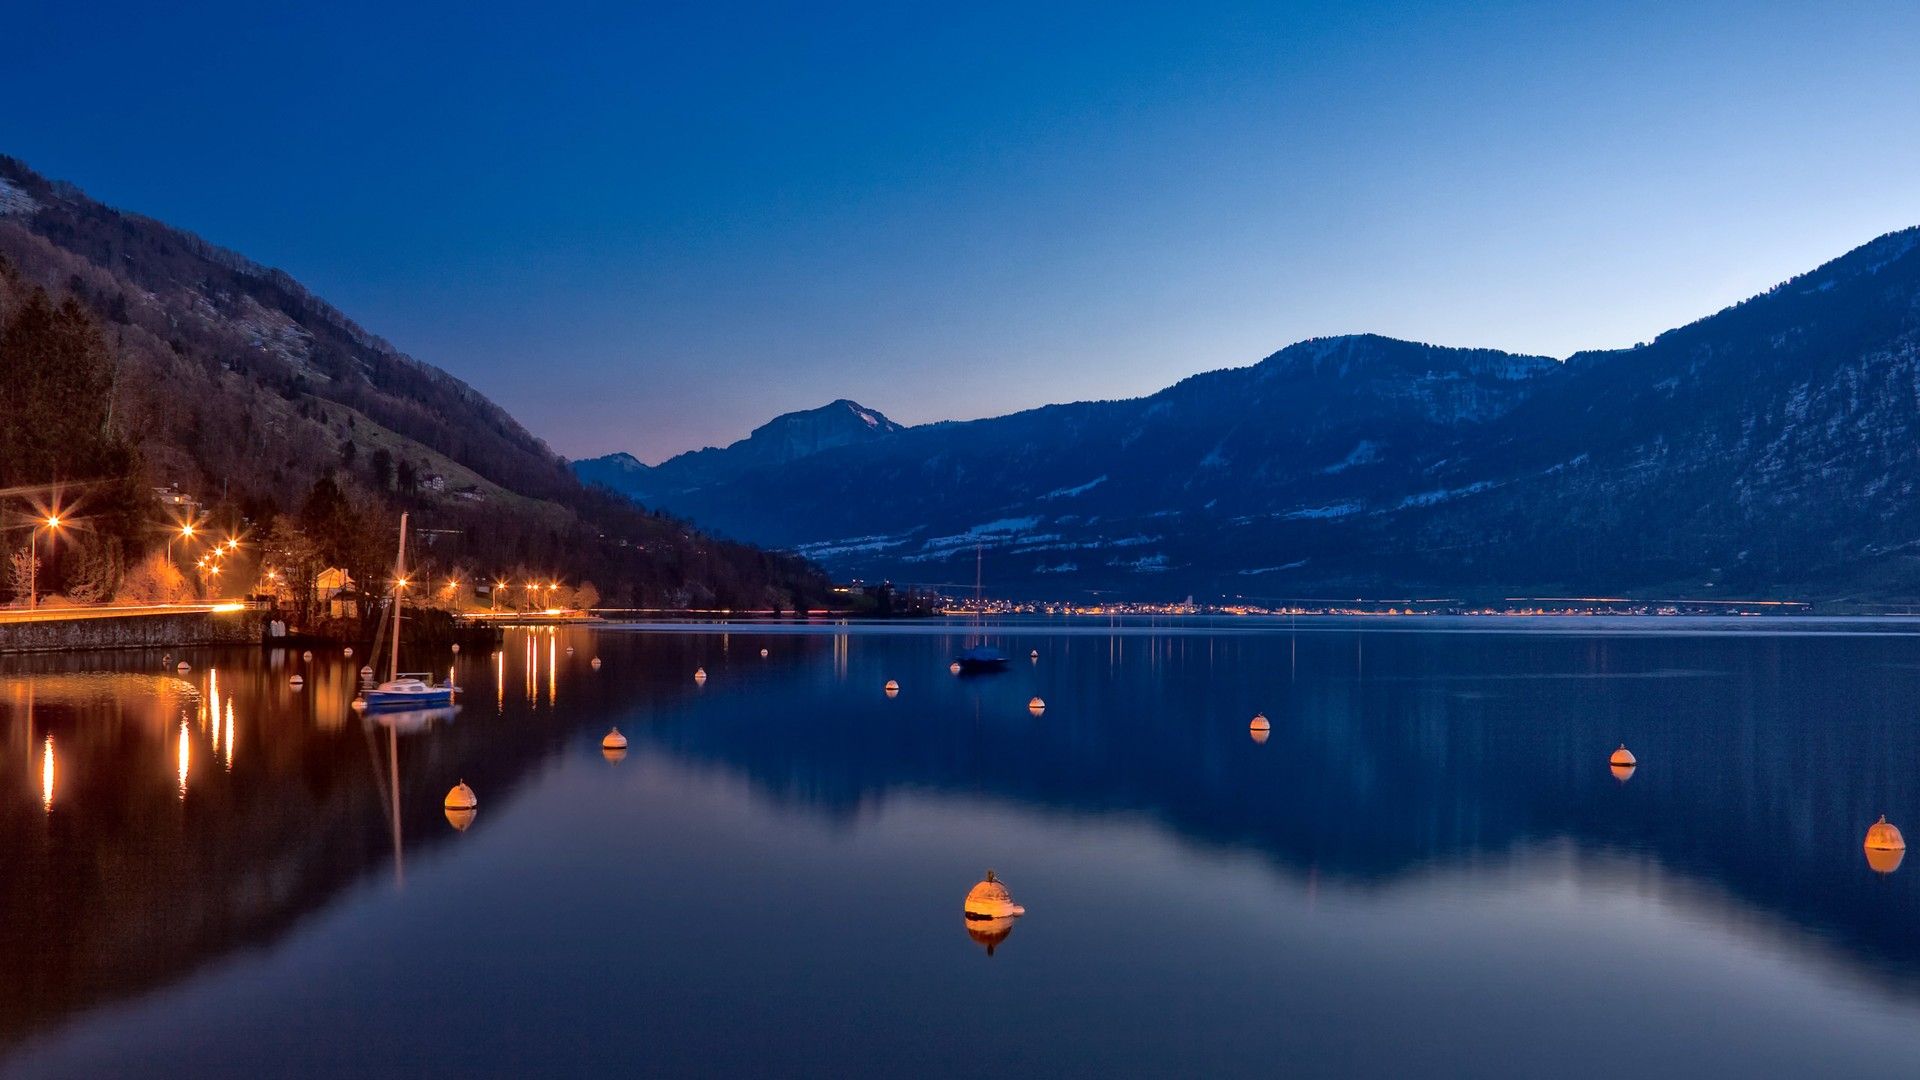 #lake, #nature, #lake zug (switzerland), #mountains, #boat, #Switzerland, #night, wallpaper